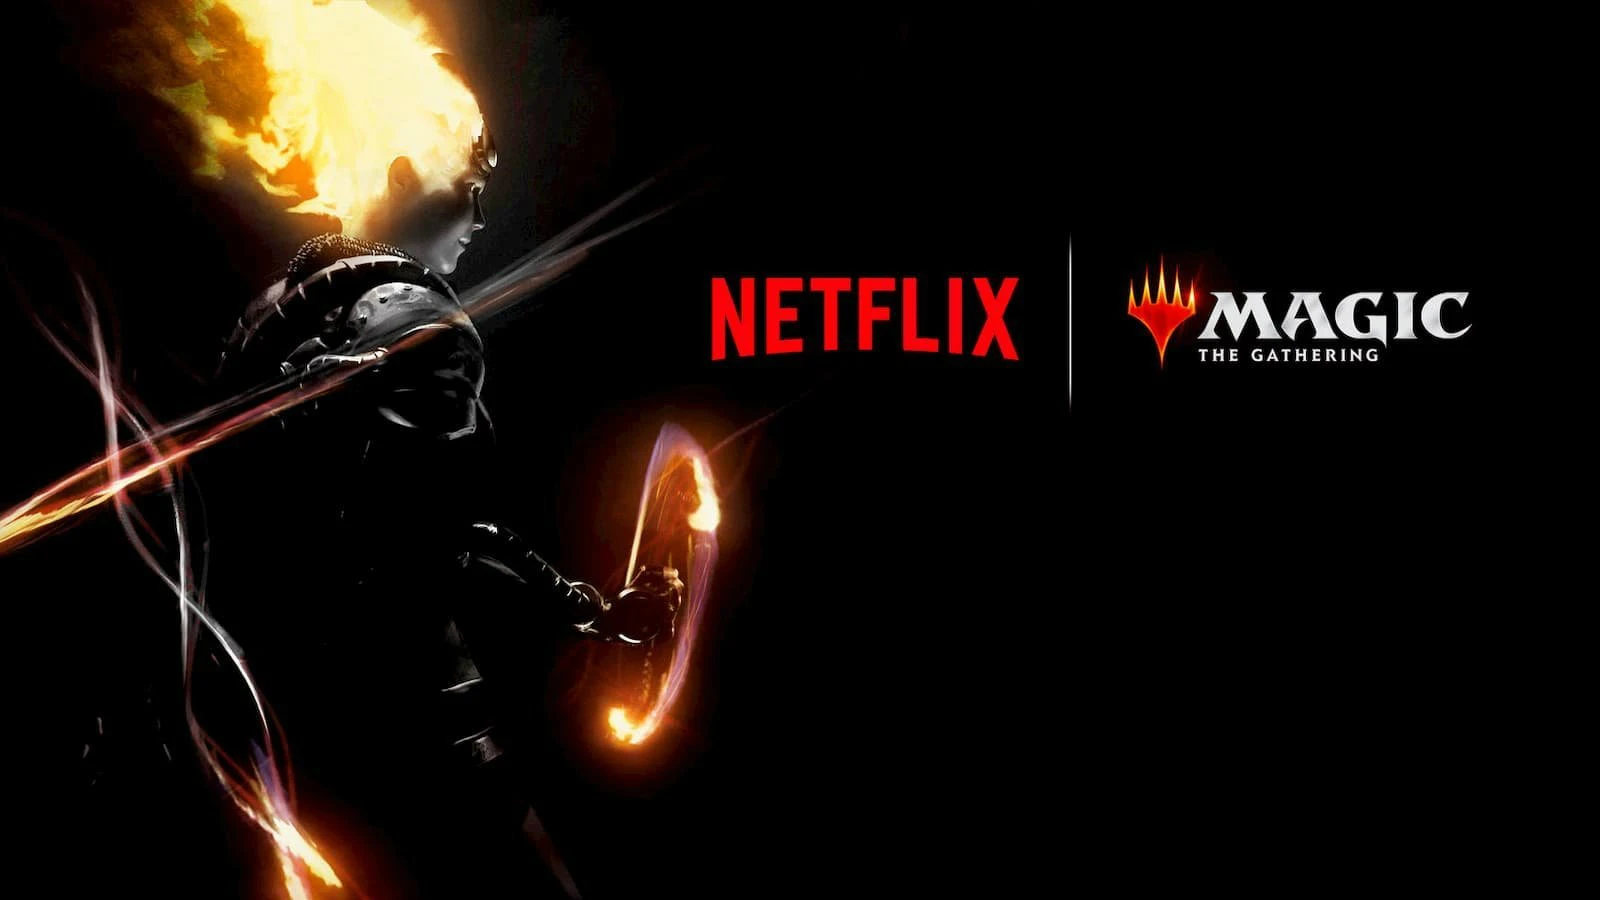 Netflix将联手罗素兄弟拍摄《万智牌》动画剧集